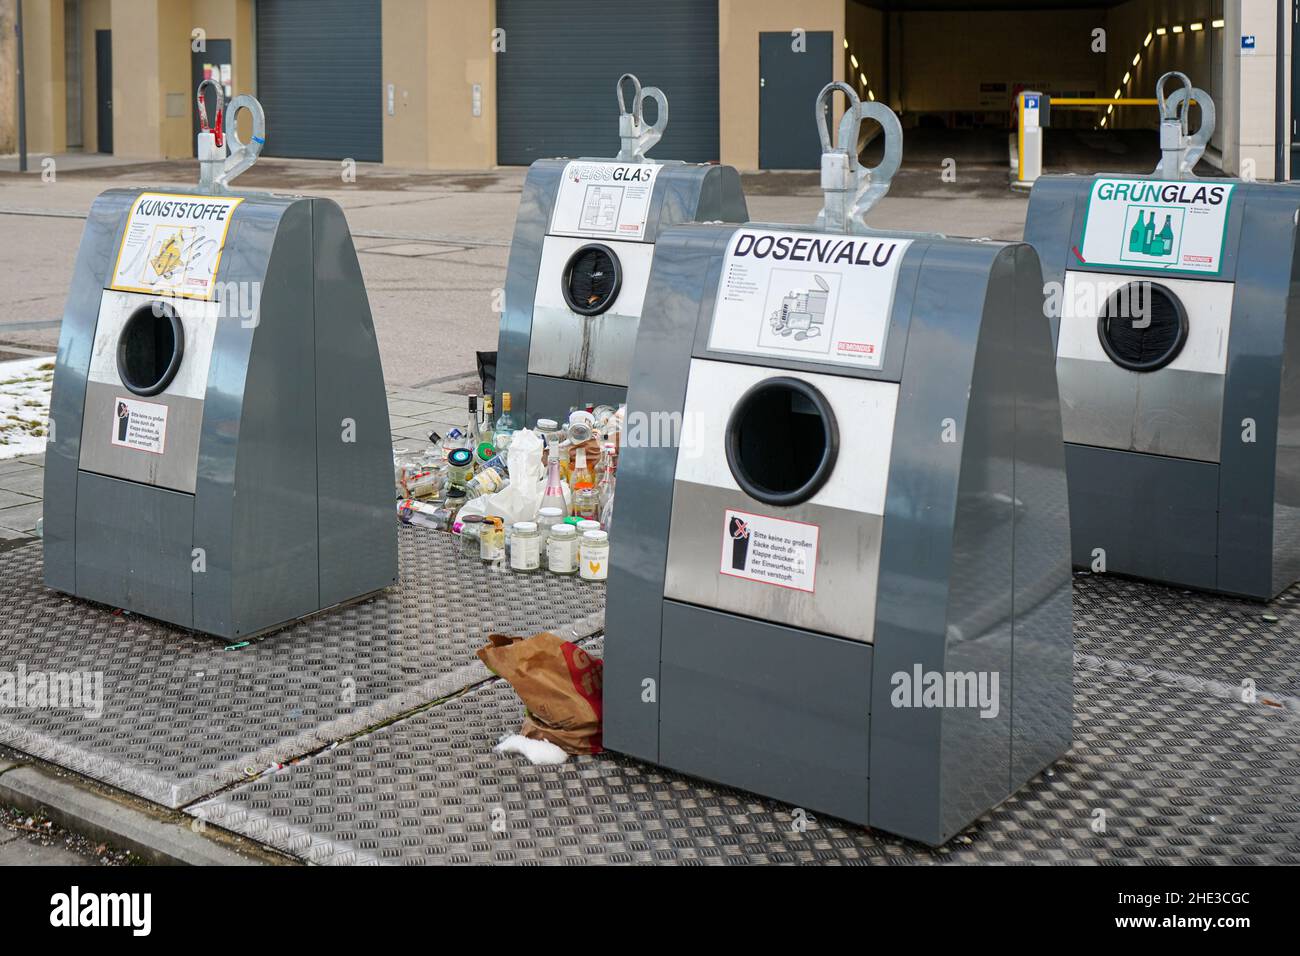 Cuatro modernos contenedores de aluminio para materiales reciclables frente a la entrada del aparcamiento subterráneo. Las botellas se colocan junto a los recipientes. Foto de stock